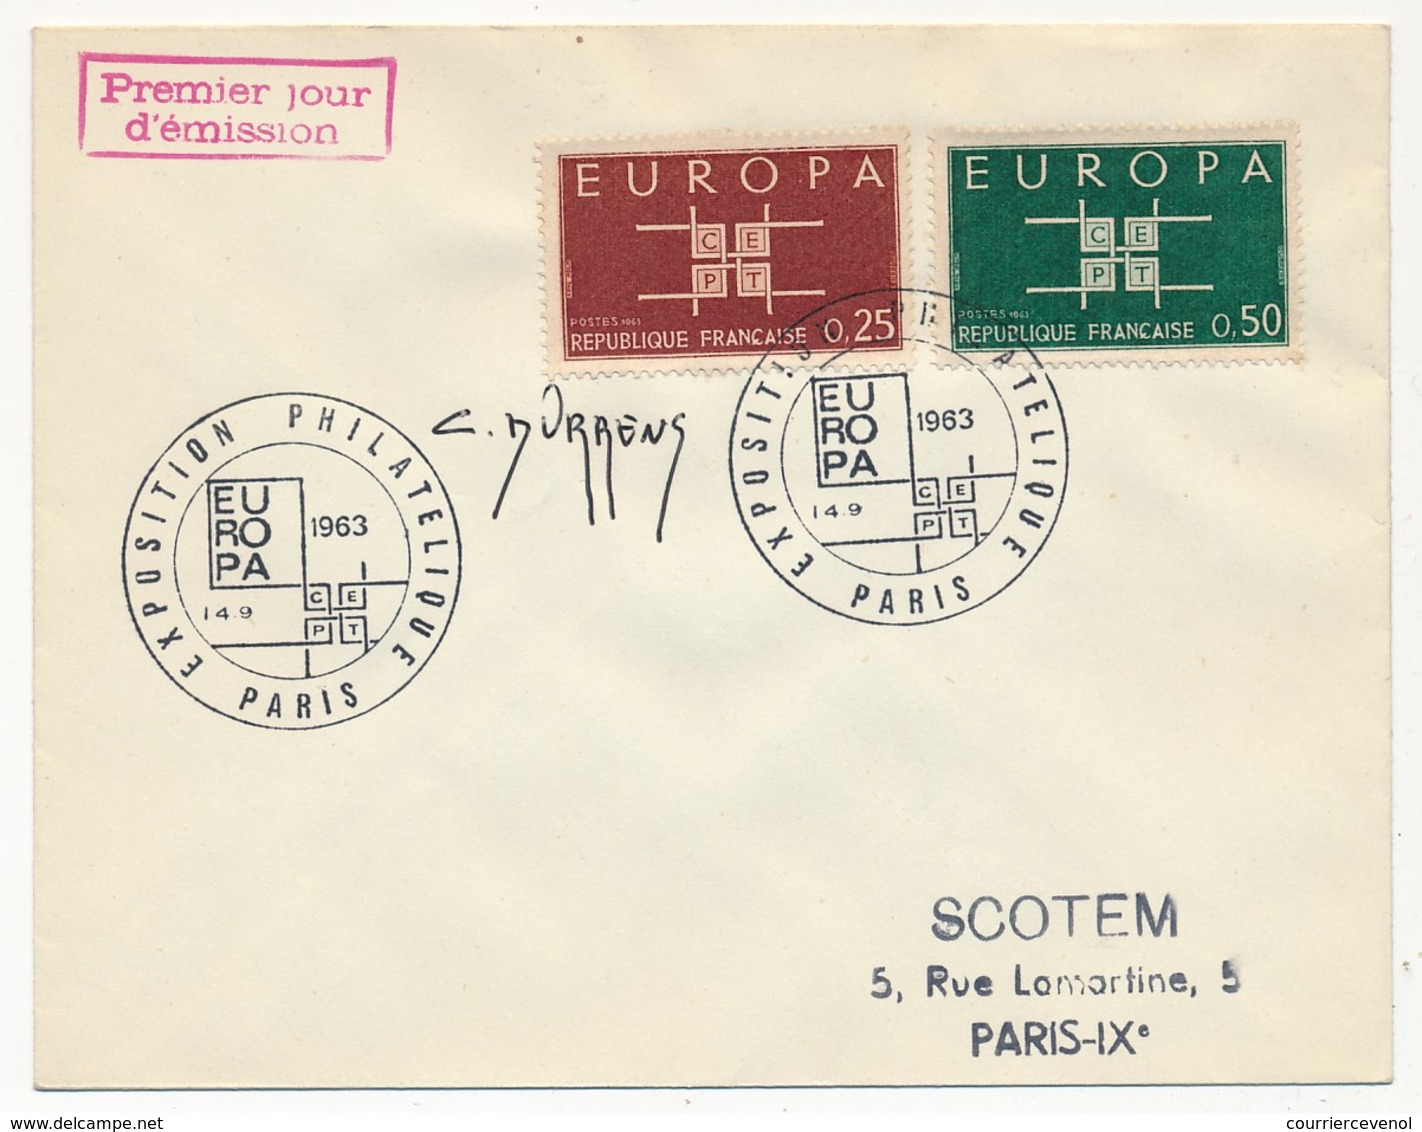 Enveloppe Scotem - Europa 1963 Obl. Illustrée Expo Philatélique Paris 1963 Signature C. DURRENS - Covers & Documents